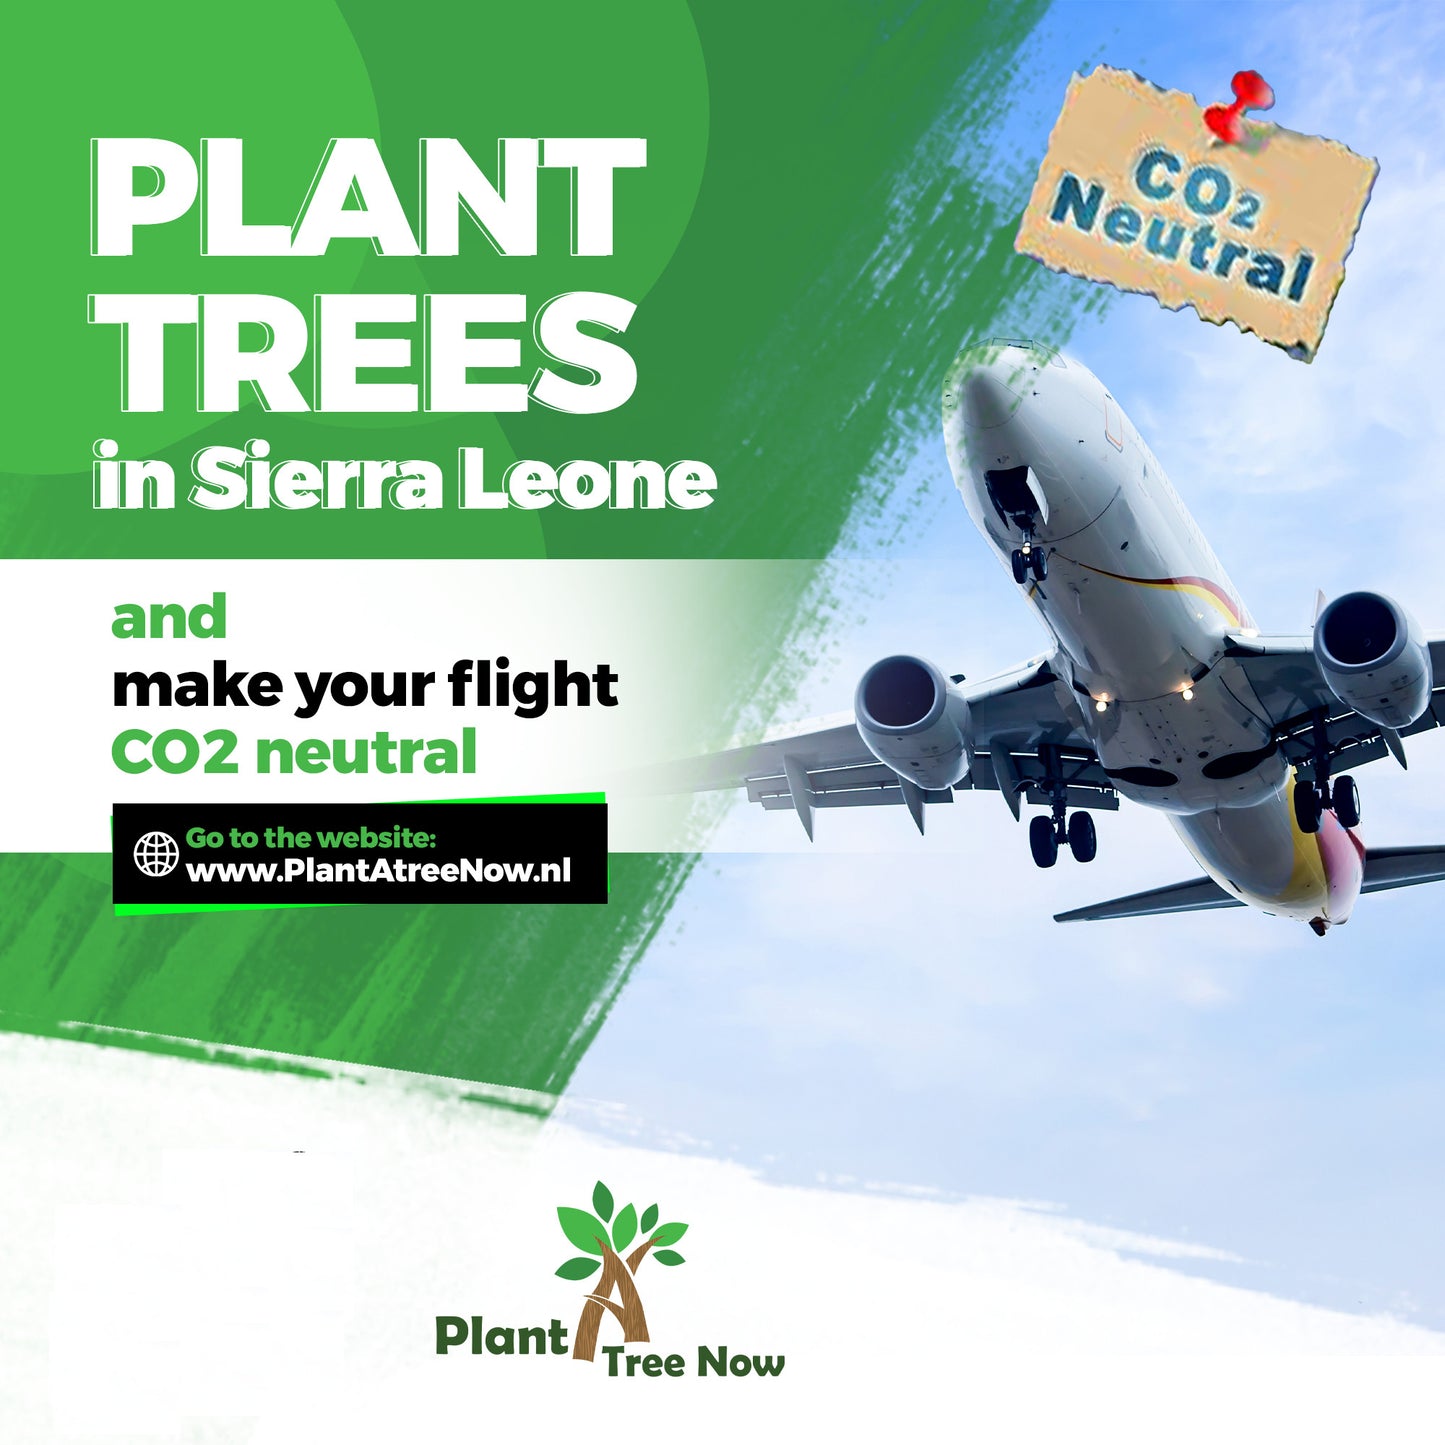 Maak je vlucht naar Sierra Leone CO2 neutraal